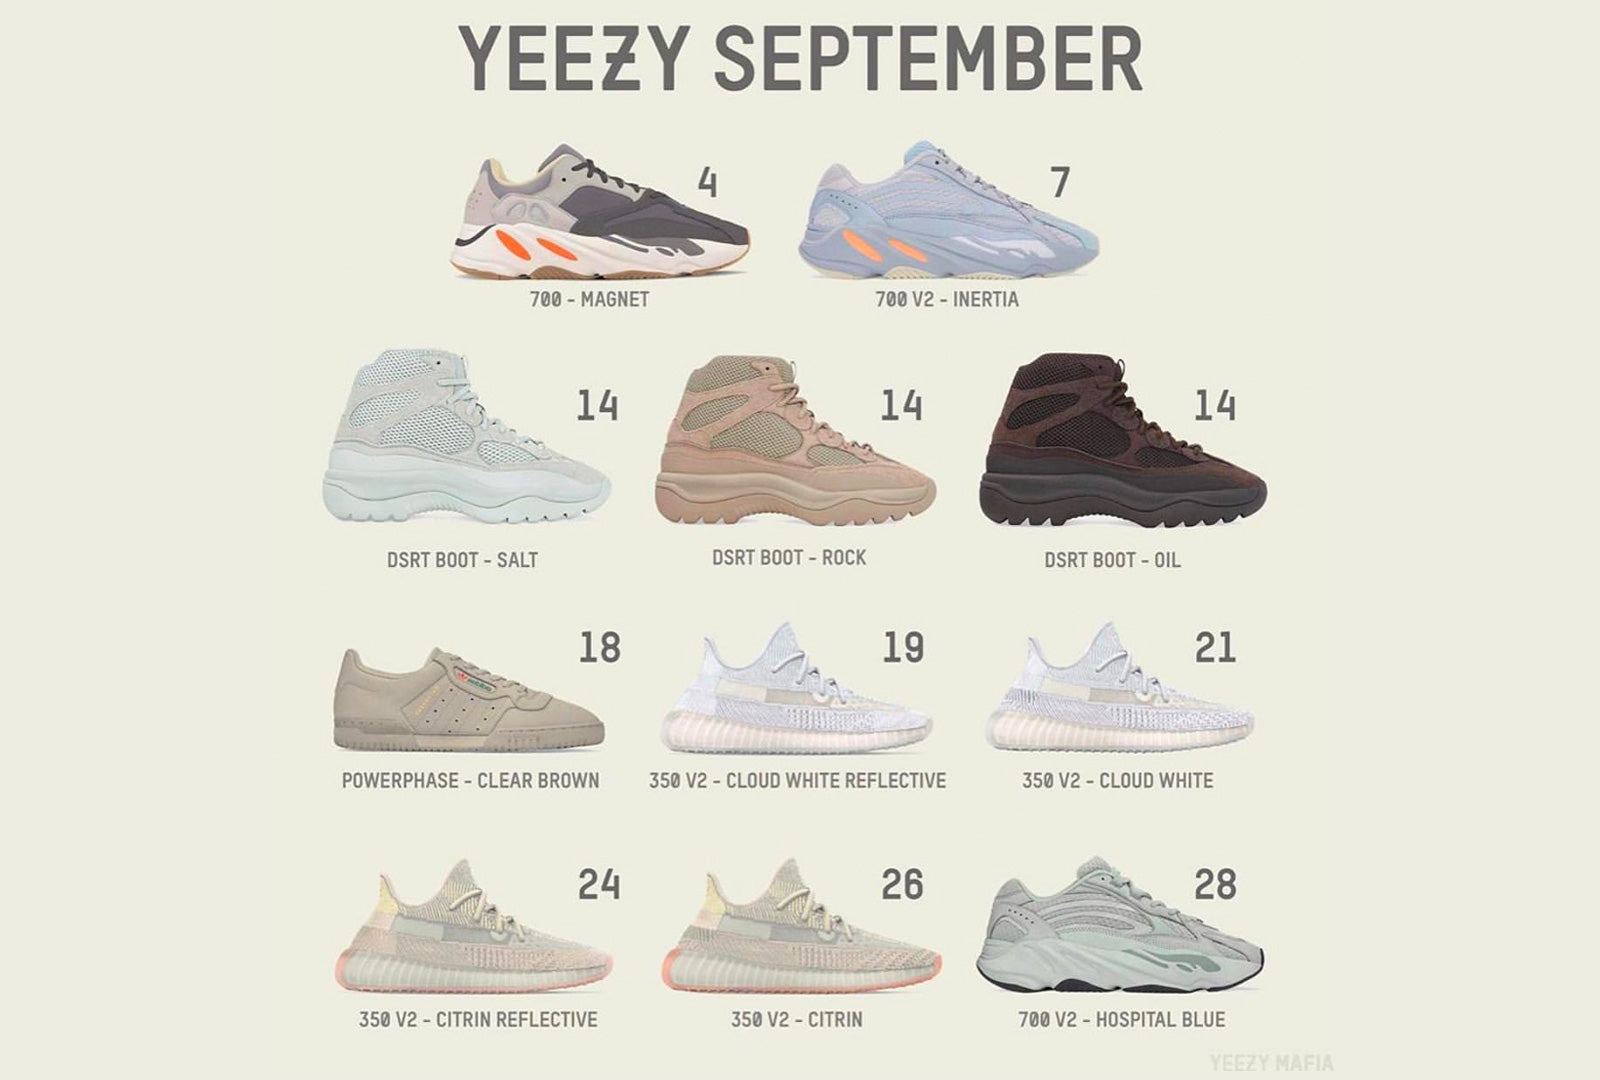 Auckland compressie beddengoed Yeezy Release Calendar September 2019 - Sneakers ER